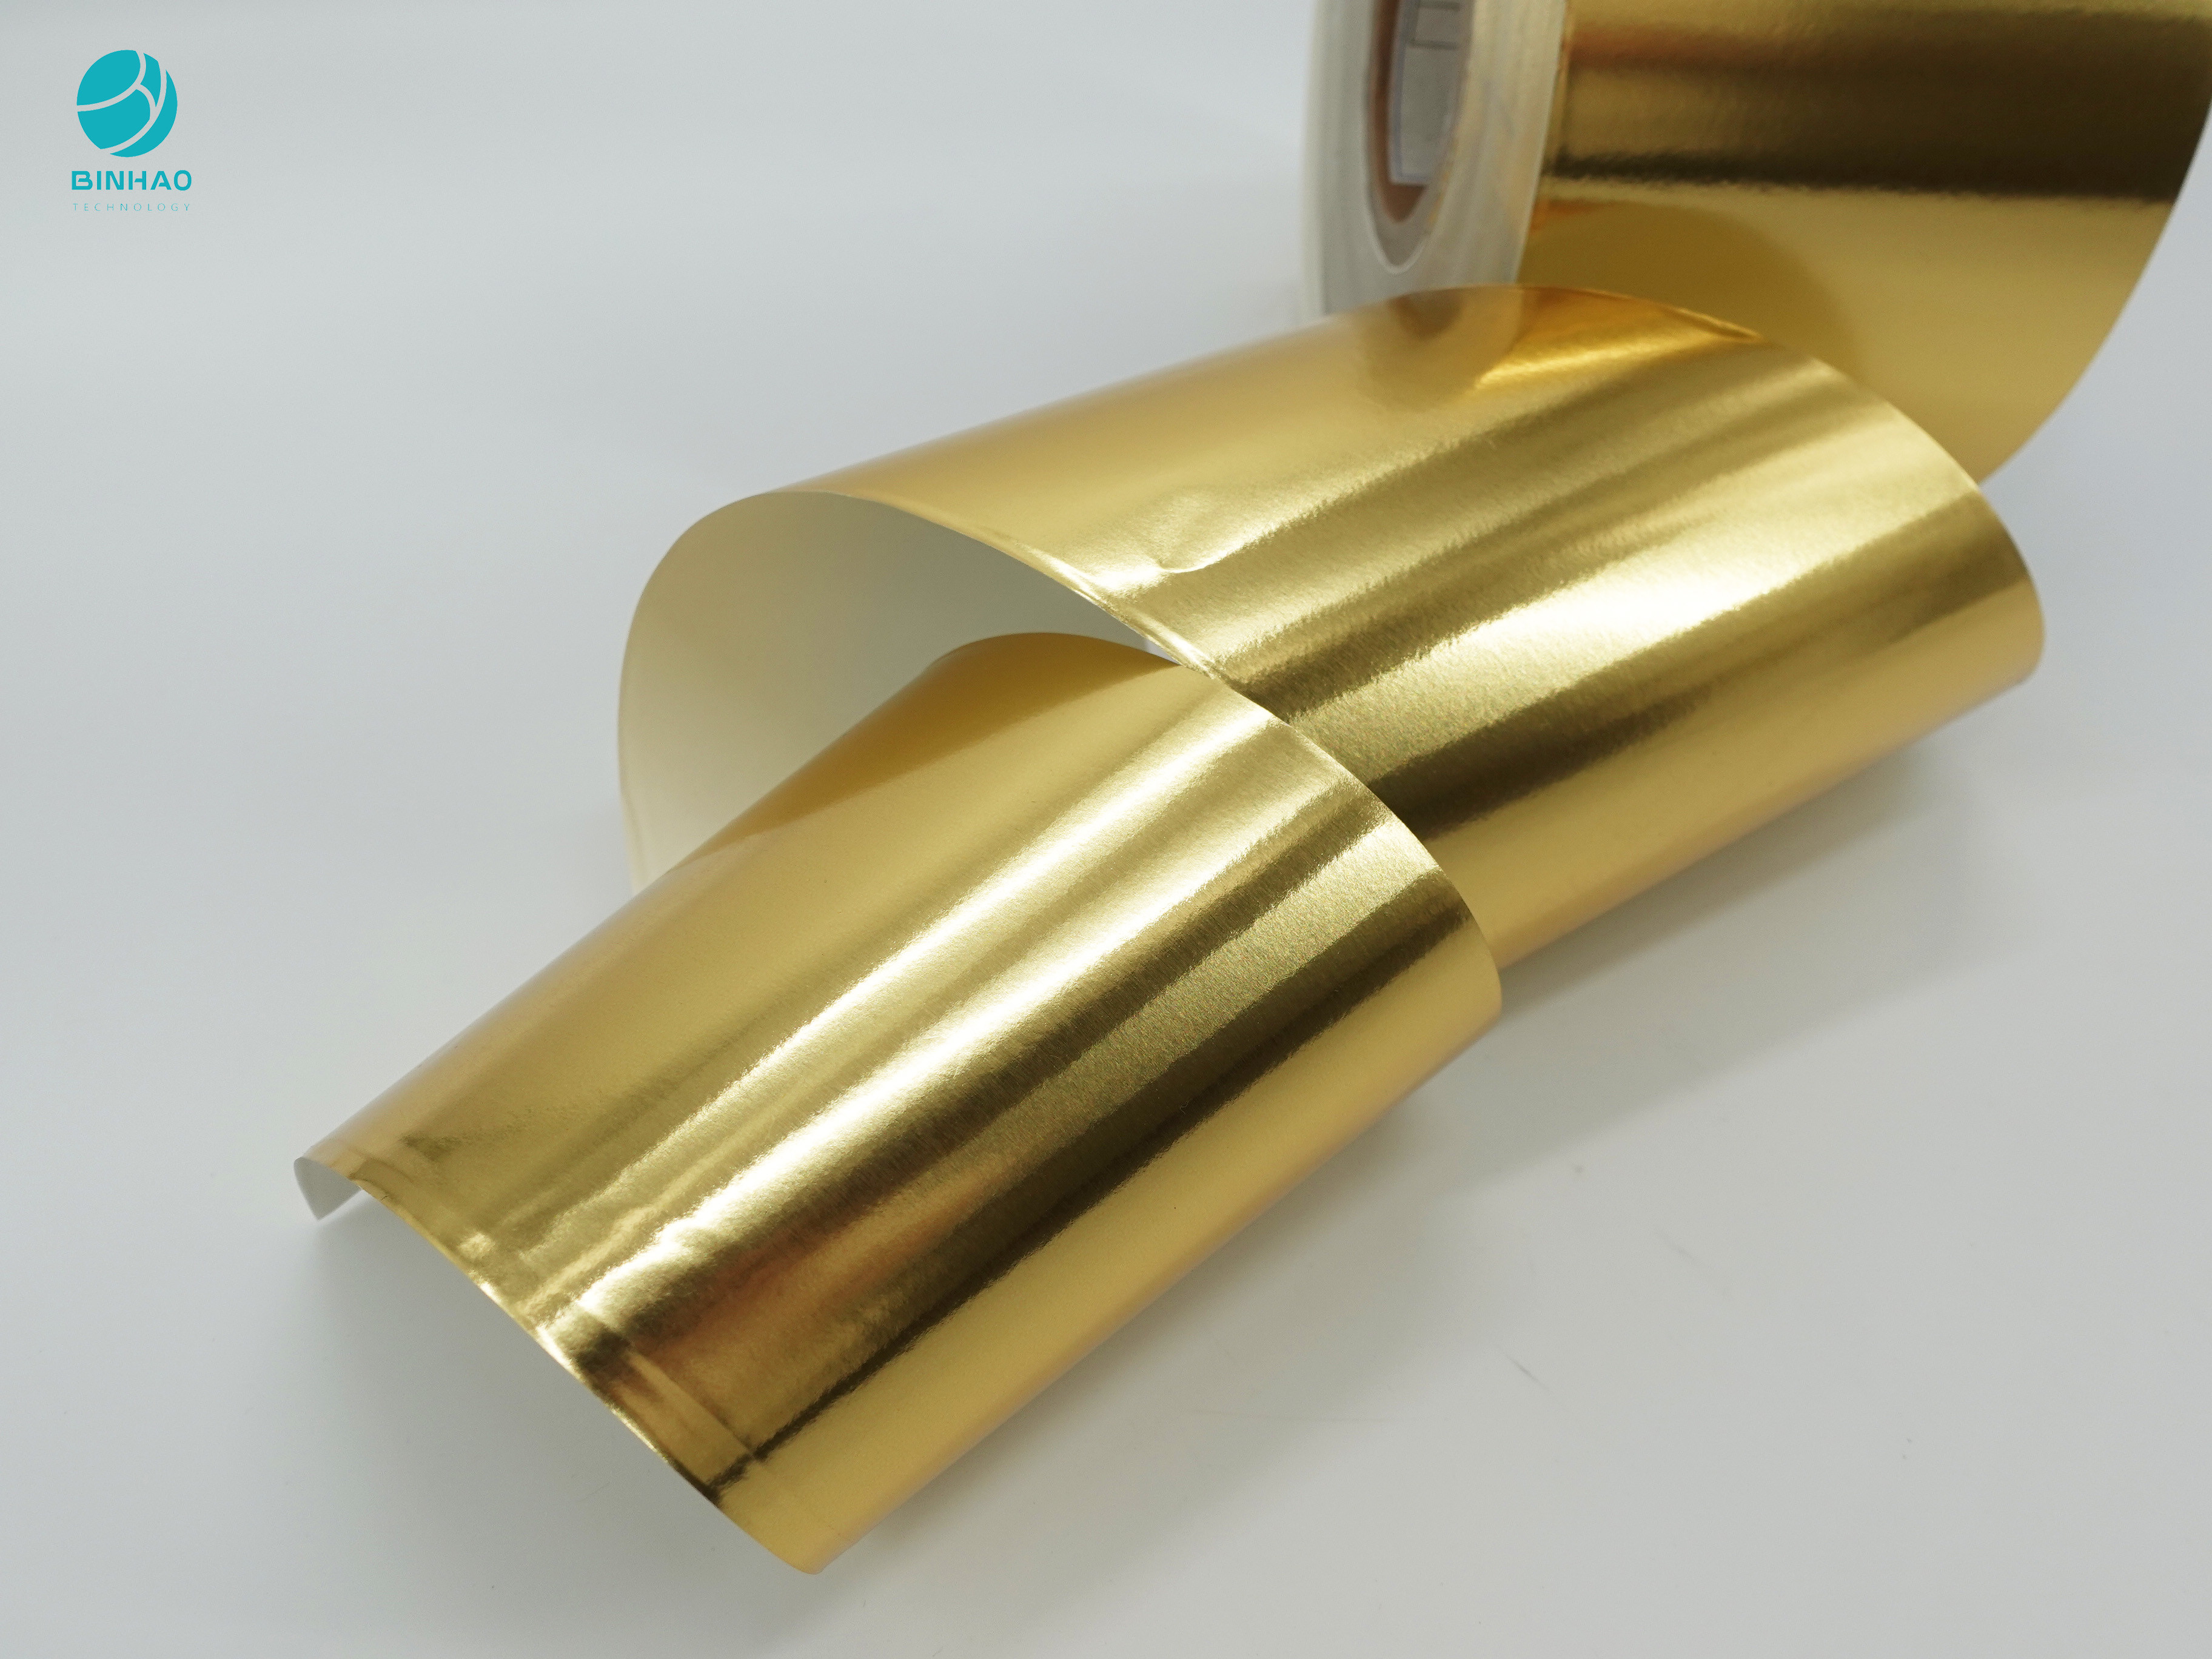 담배 인너 팩킹을 위한 금빛 매끄러운 복합체 114 밀리미터 알루미늄 포일지